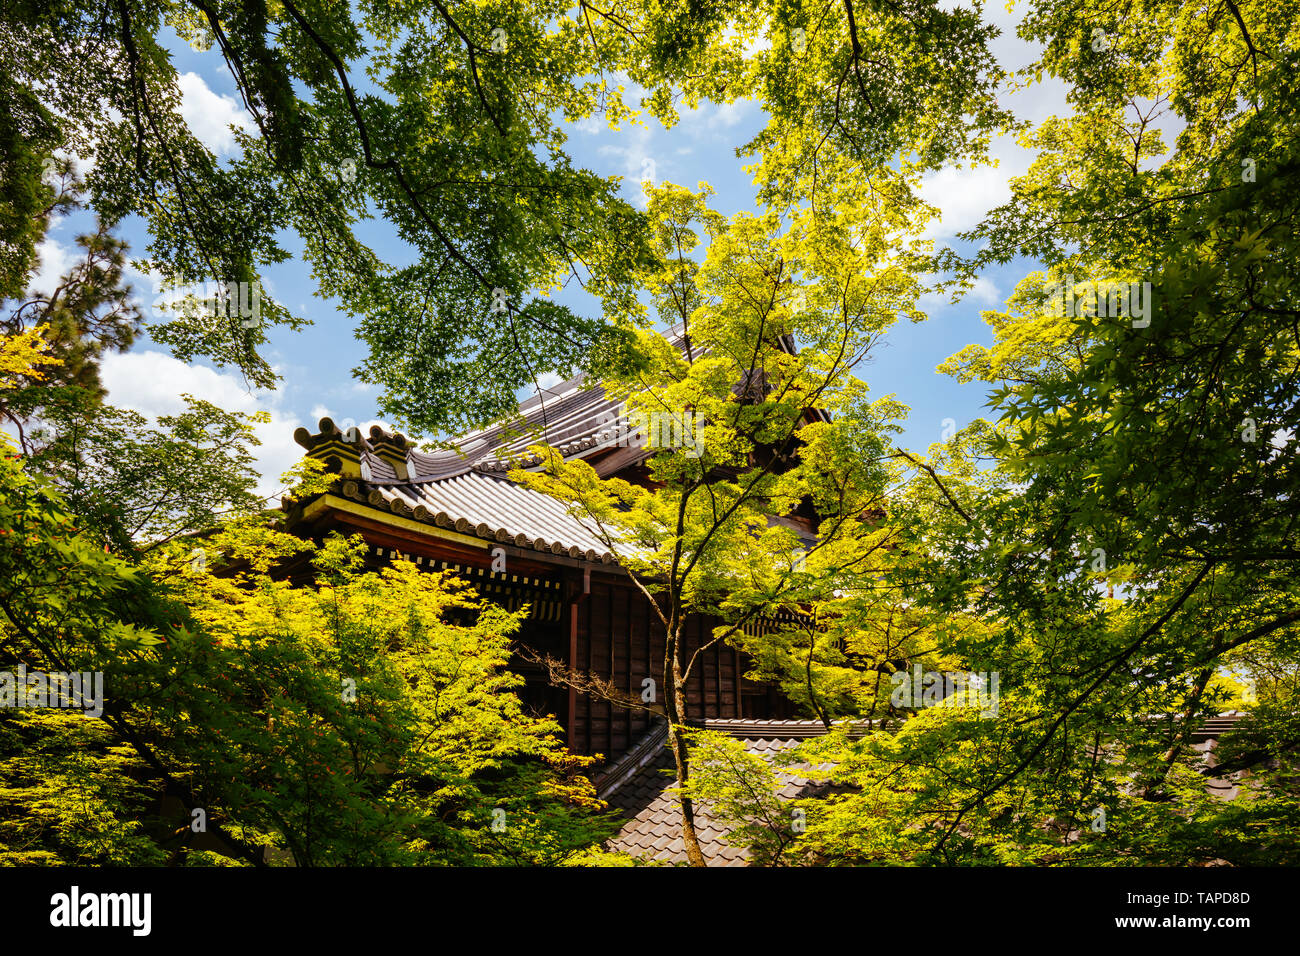 Eikando Temple in Kyoto Japan Stock Photo